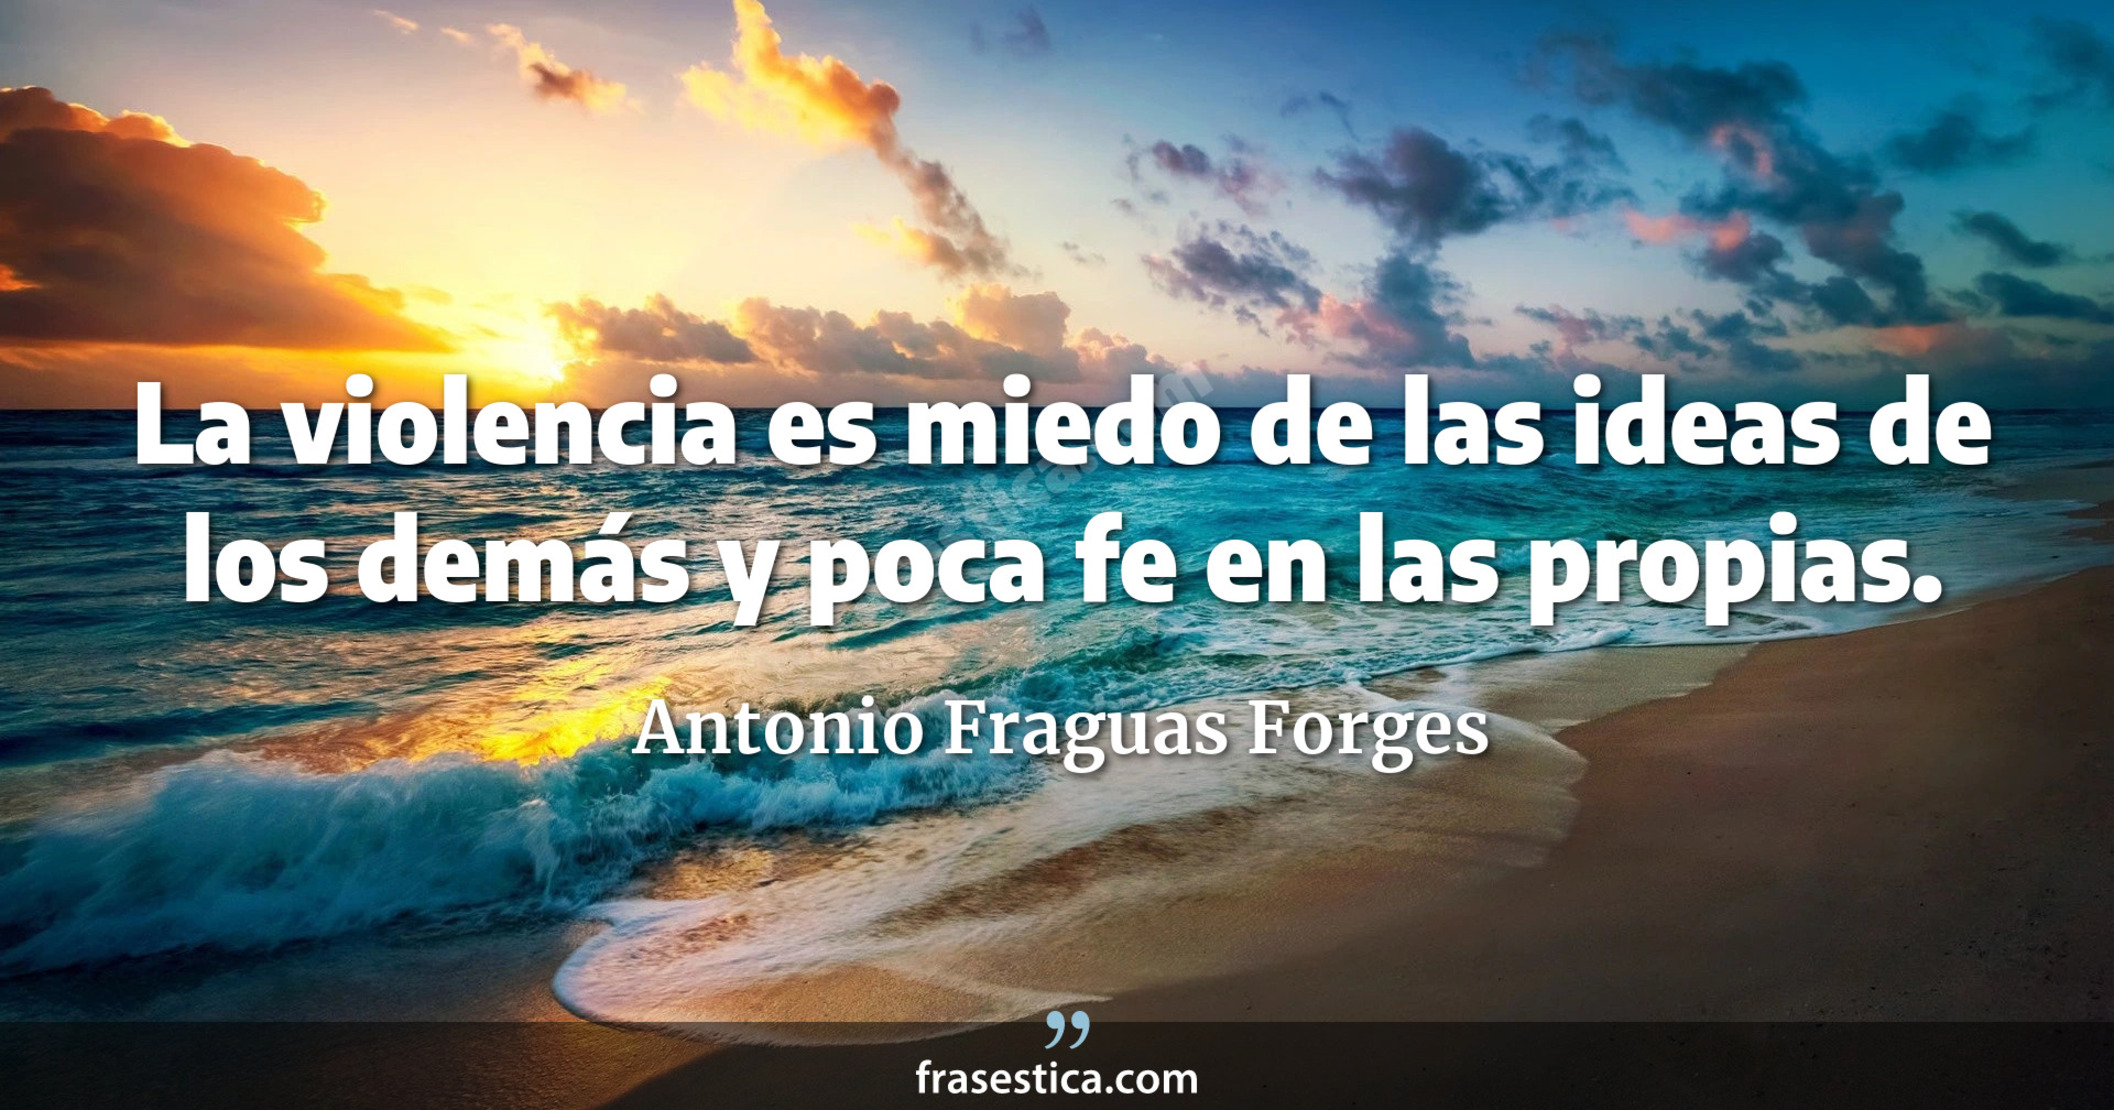 La violencia es miedo de las ideas de los demás y poca fe en las propias. - Antonio Fraguas Forges